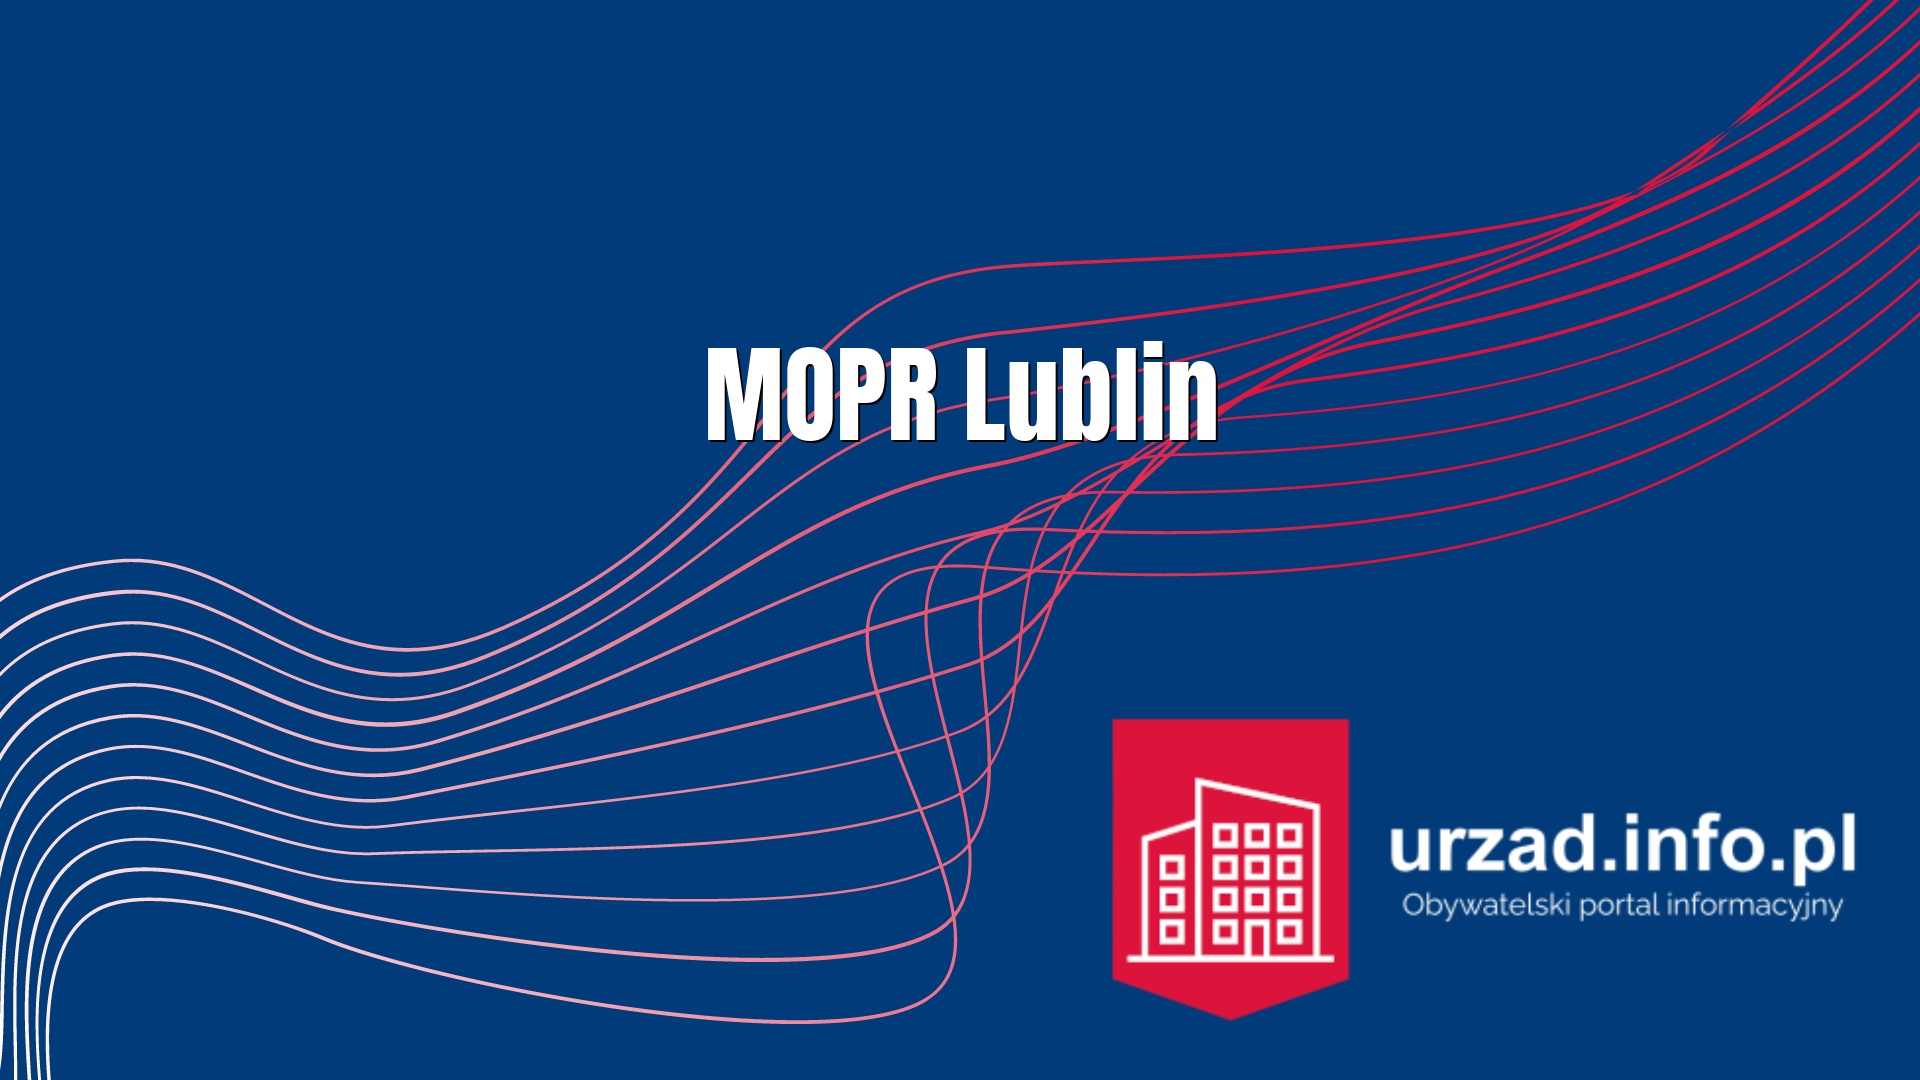 MOPR Lublin – Miejski Ośrodek Pomocy Rodzinie w Lublinie